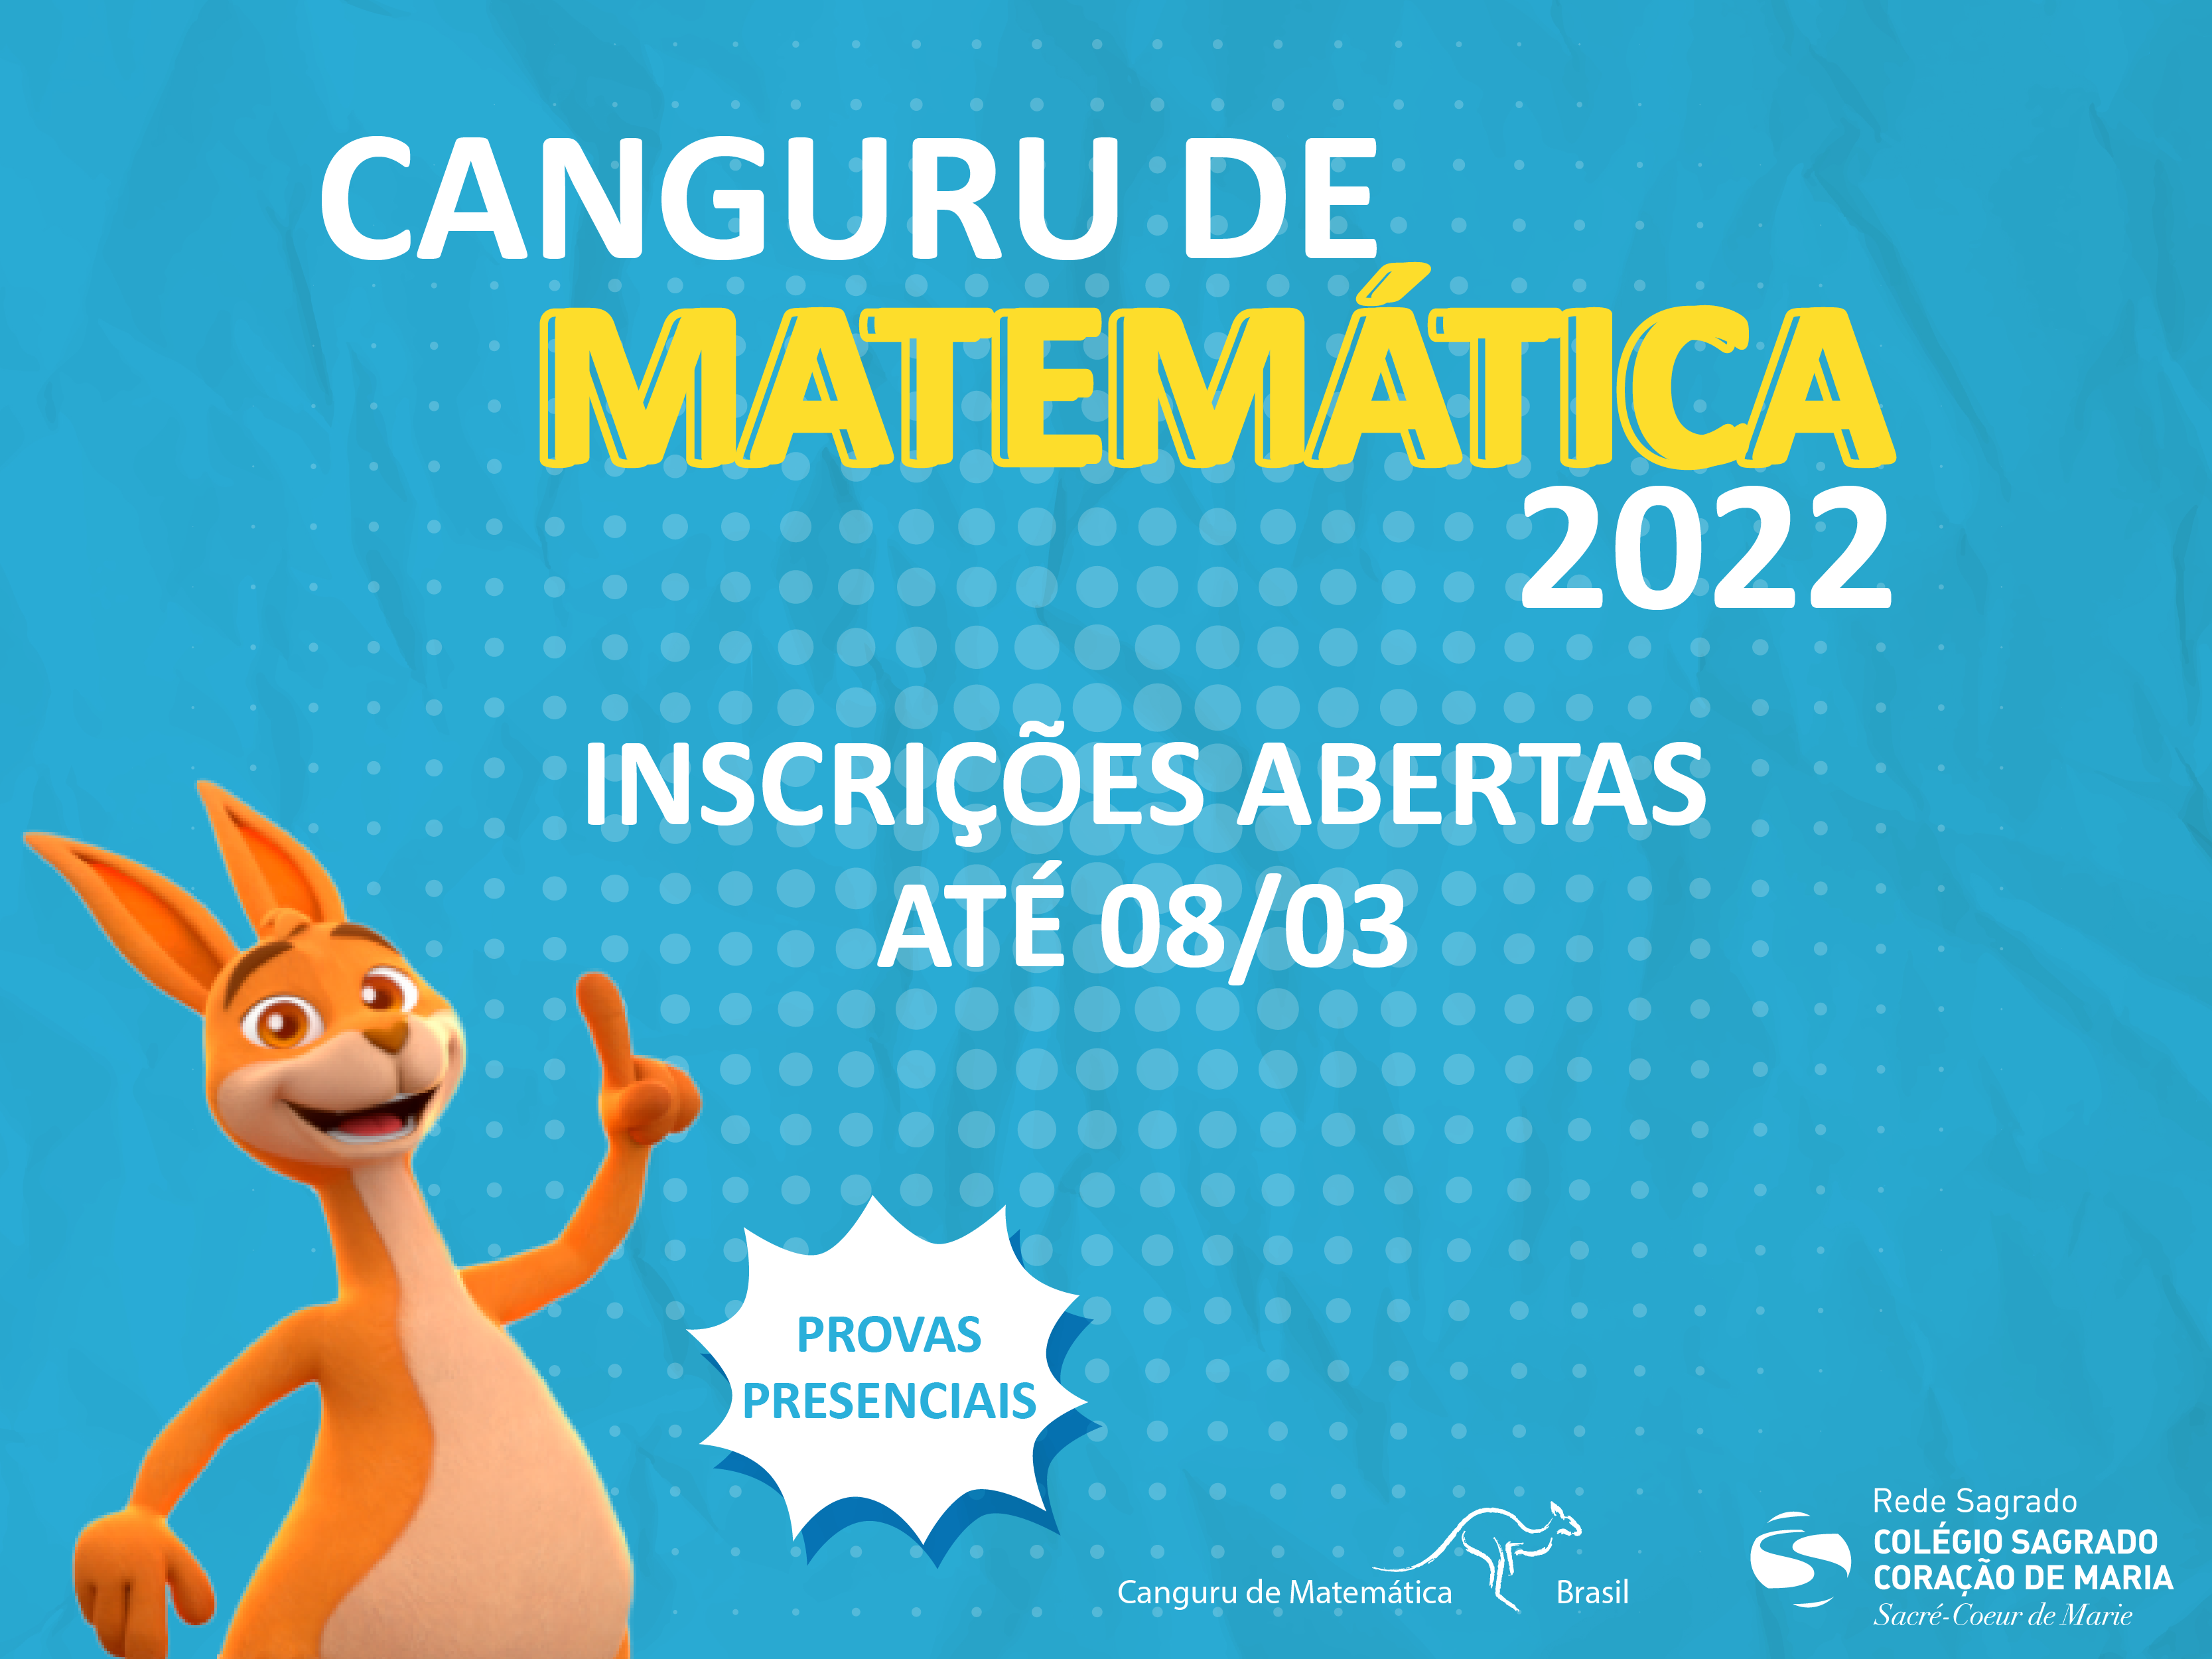 Olimpíada Canguru de Matemática 2022: esse ano as provas serão presenciais